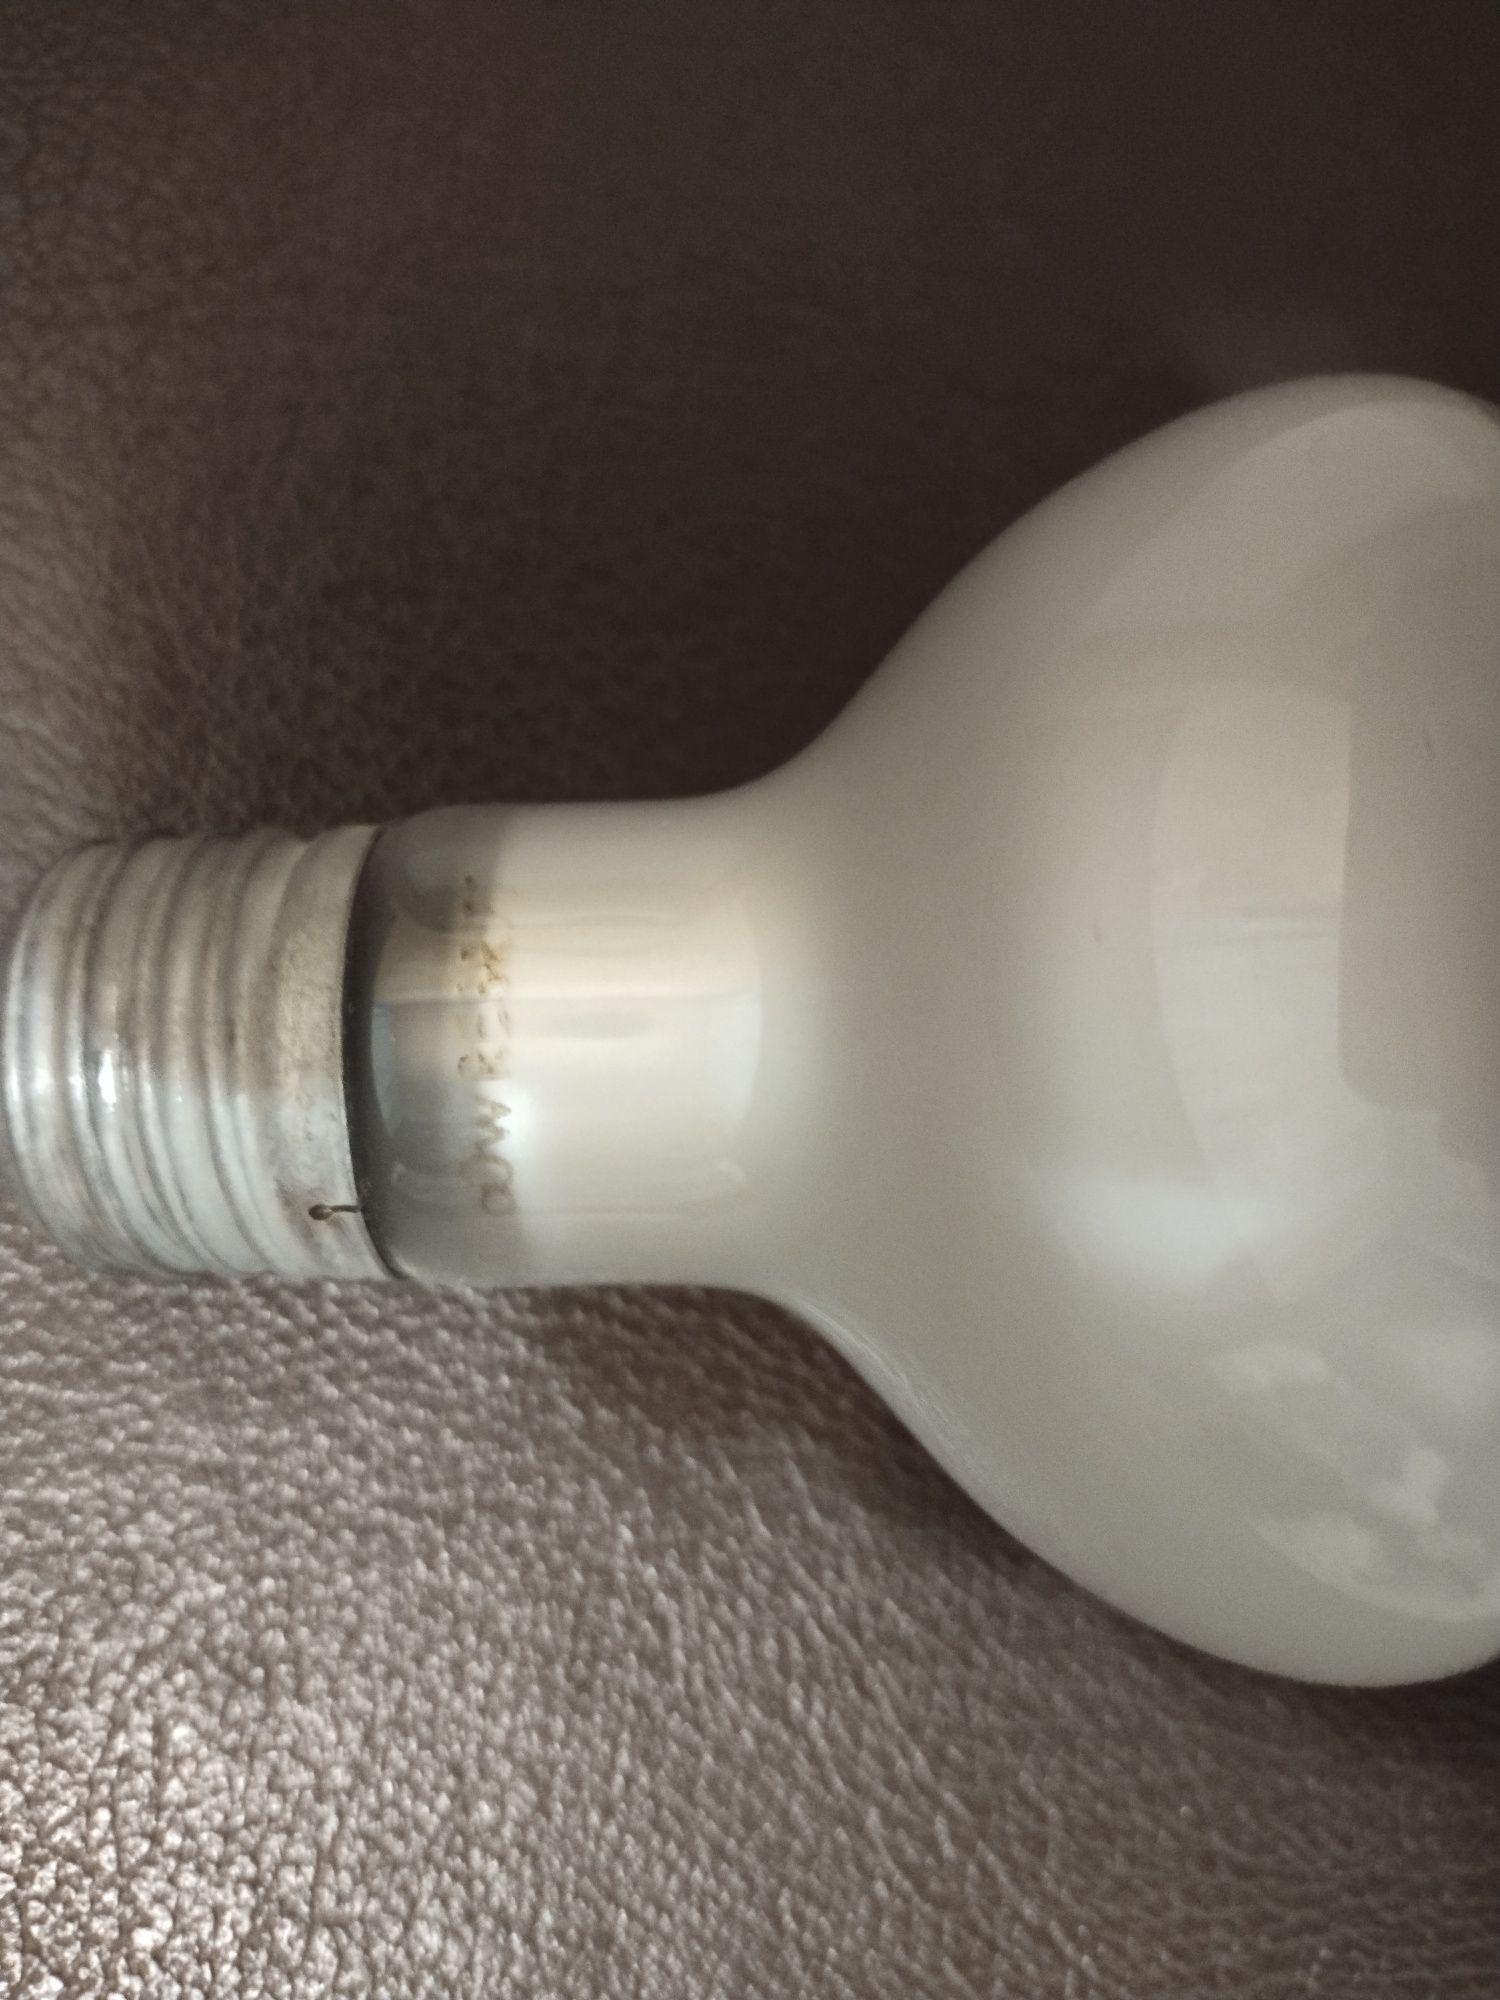 Лампочка накаливания рефлекторная матовая 60 Вт 220 В, Е27.